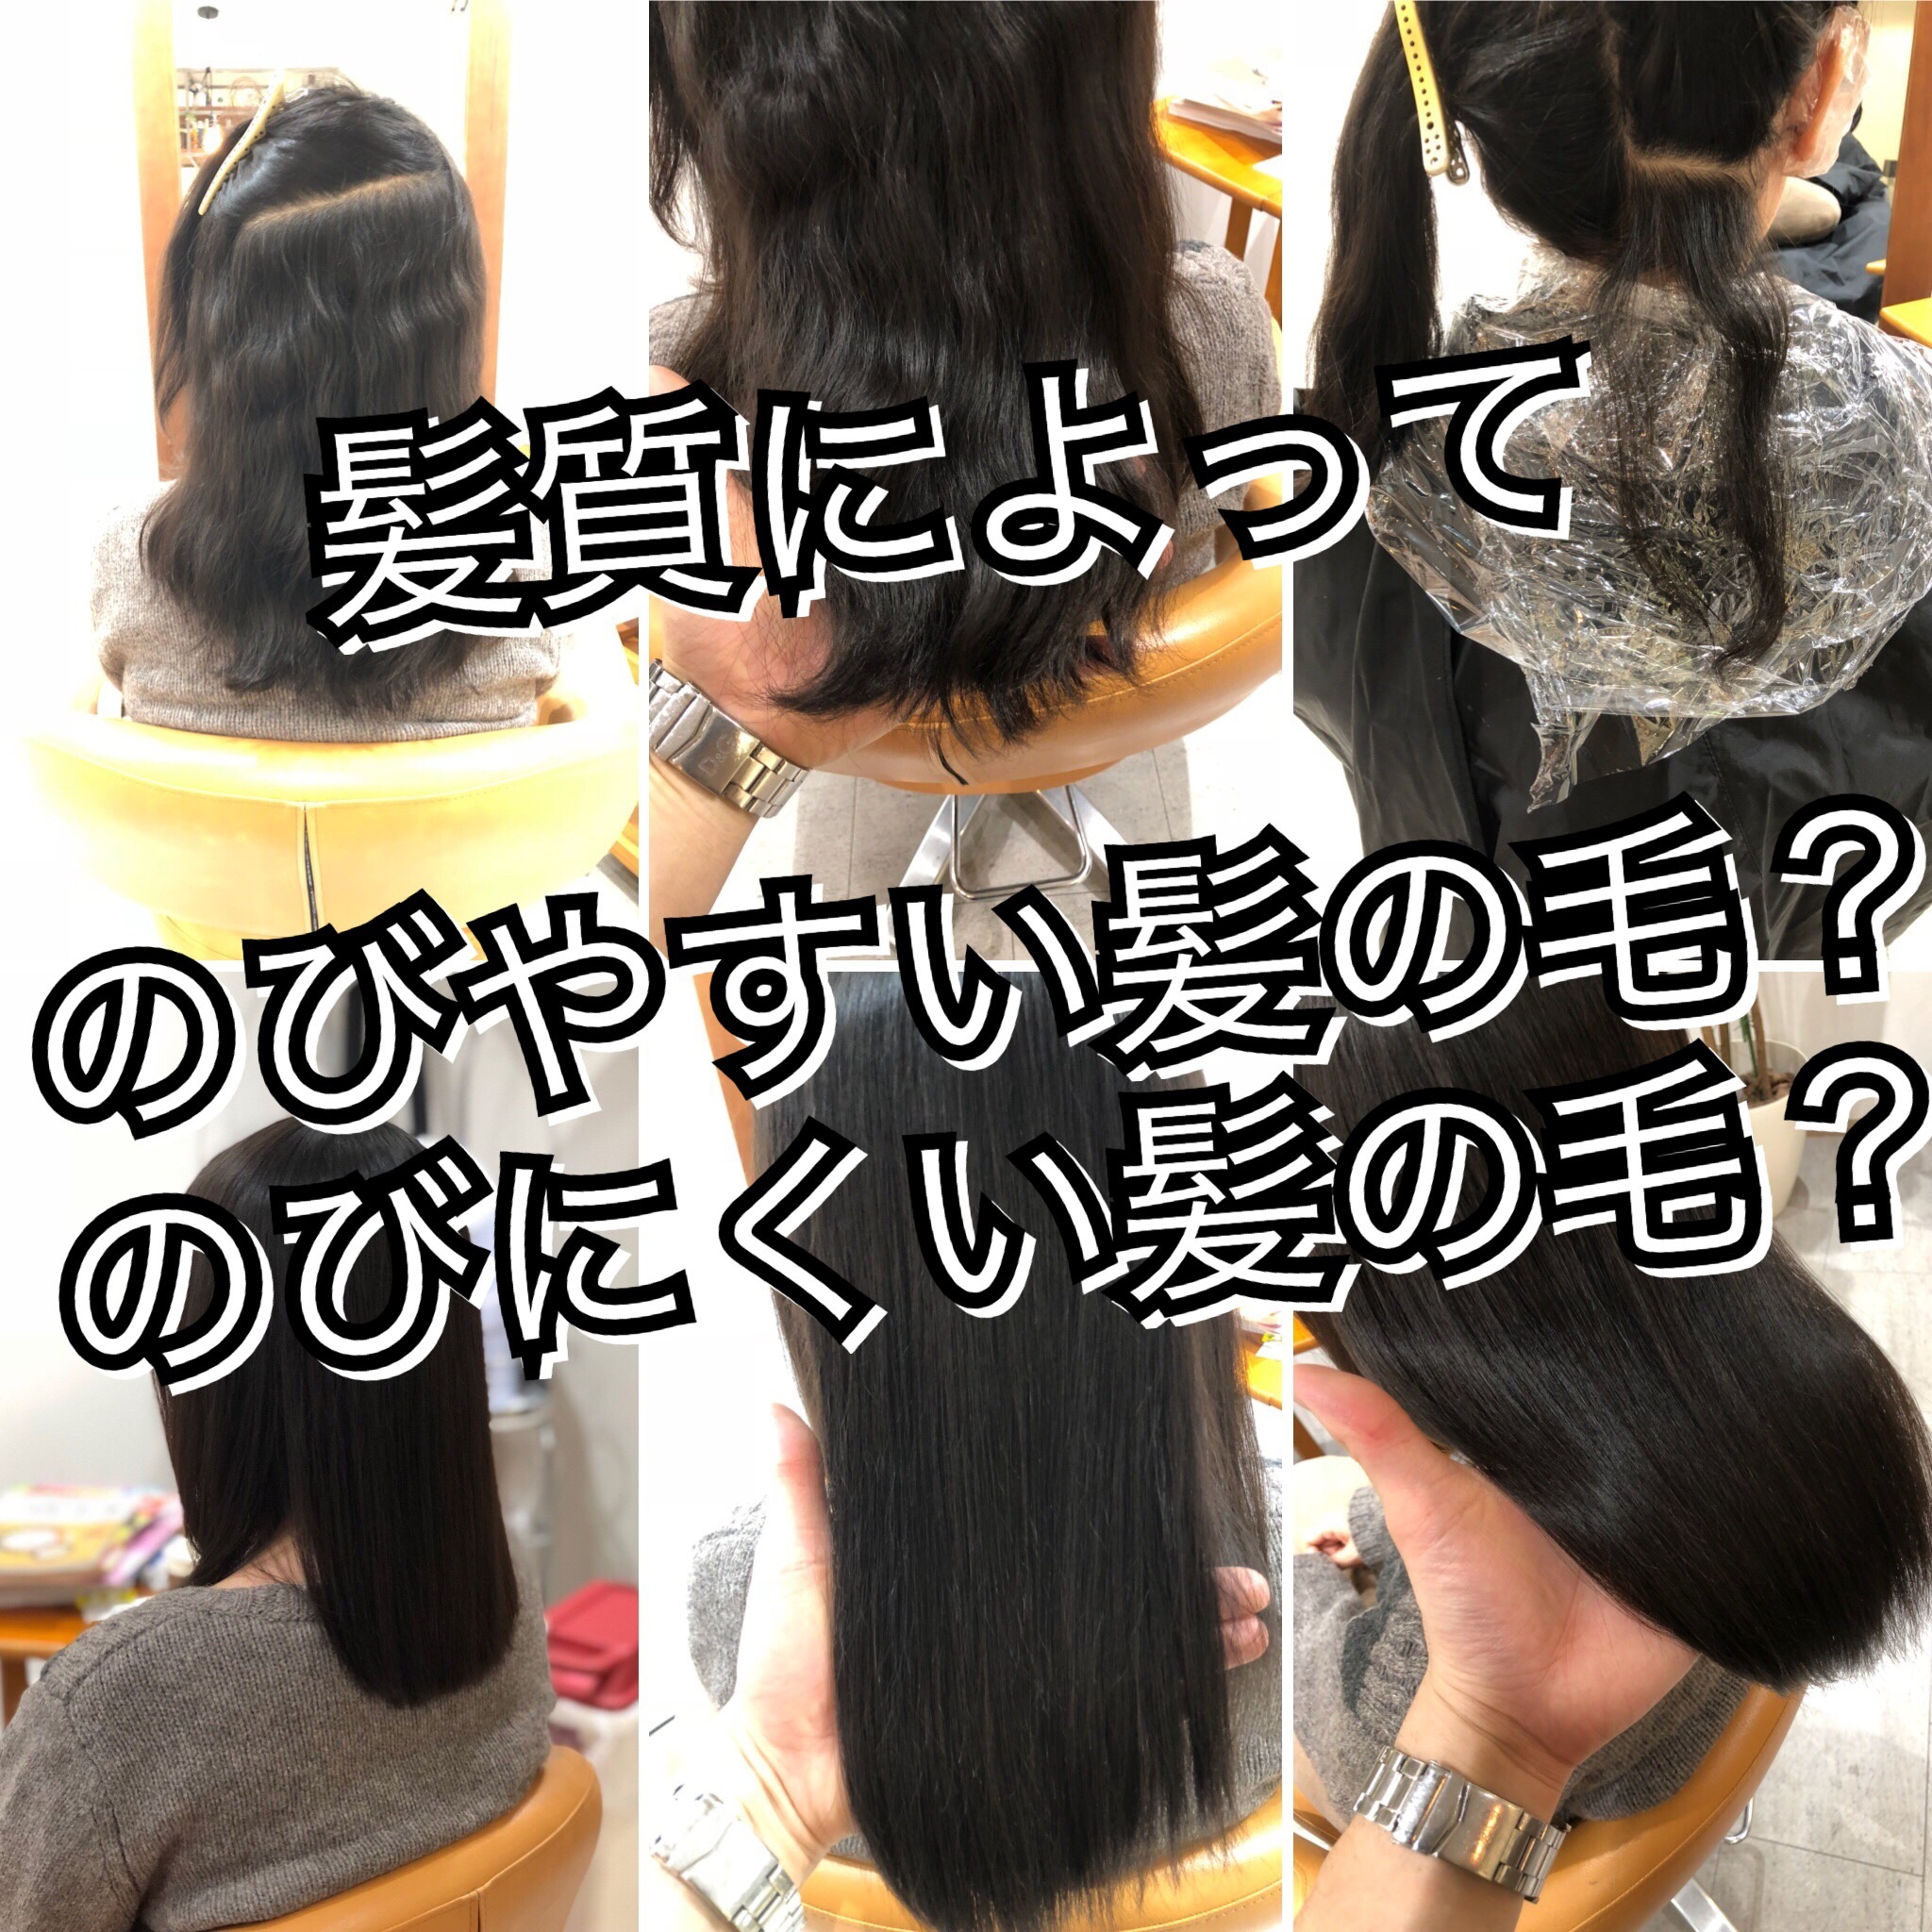 埼玉 志木 髪質によってのびやすい髪の毛 のびにくい髪の毛 縮毛矯正 Ikoi Relax Hair Room